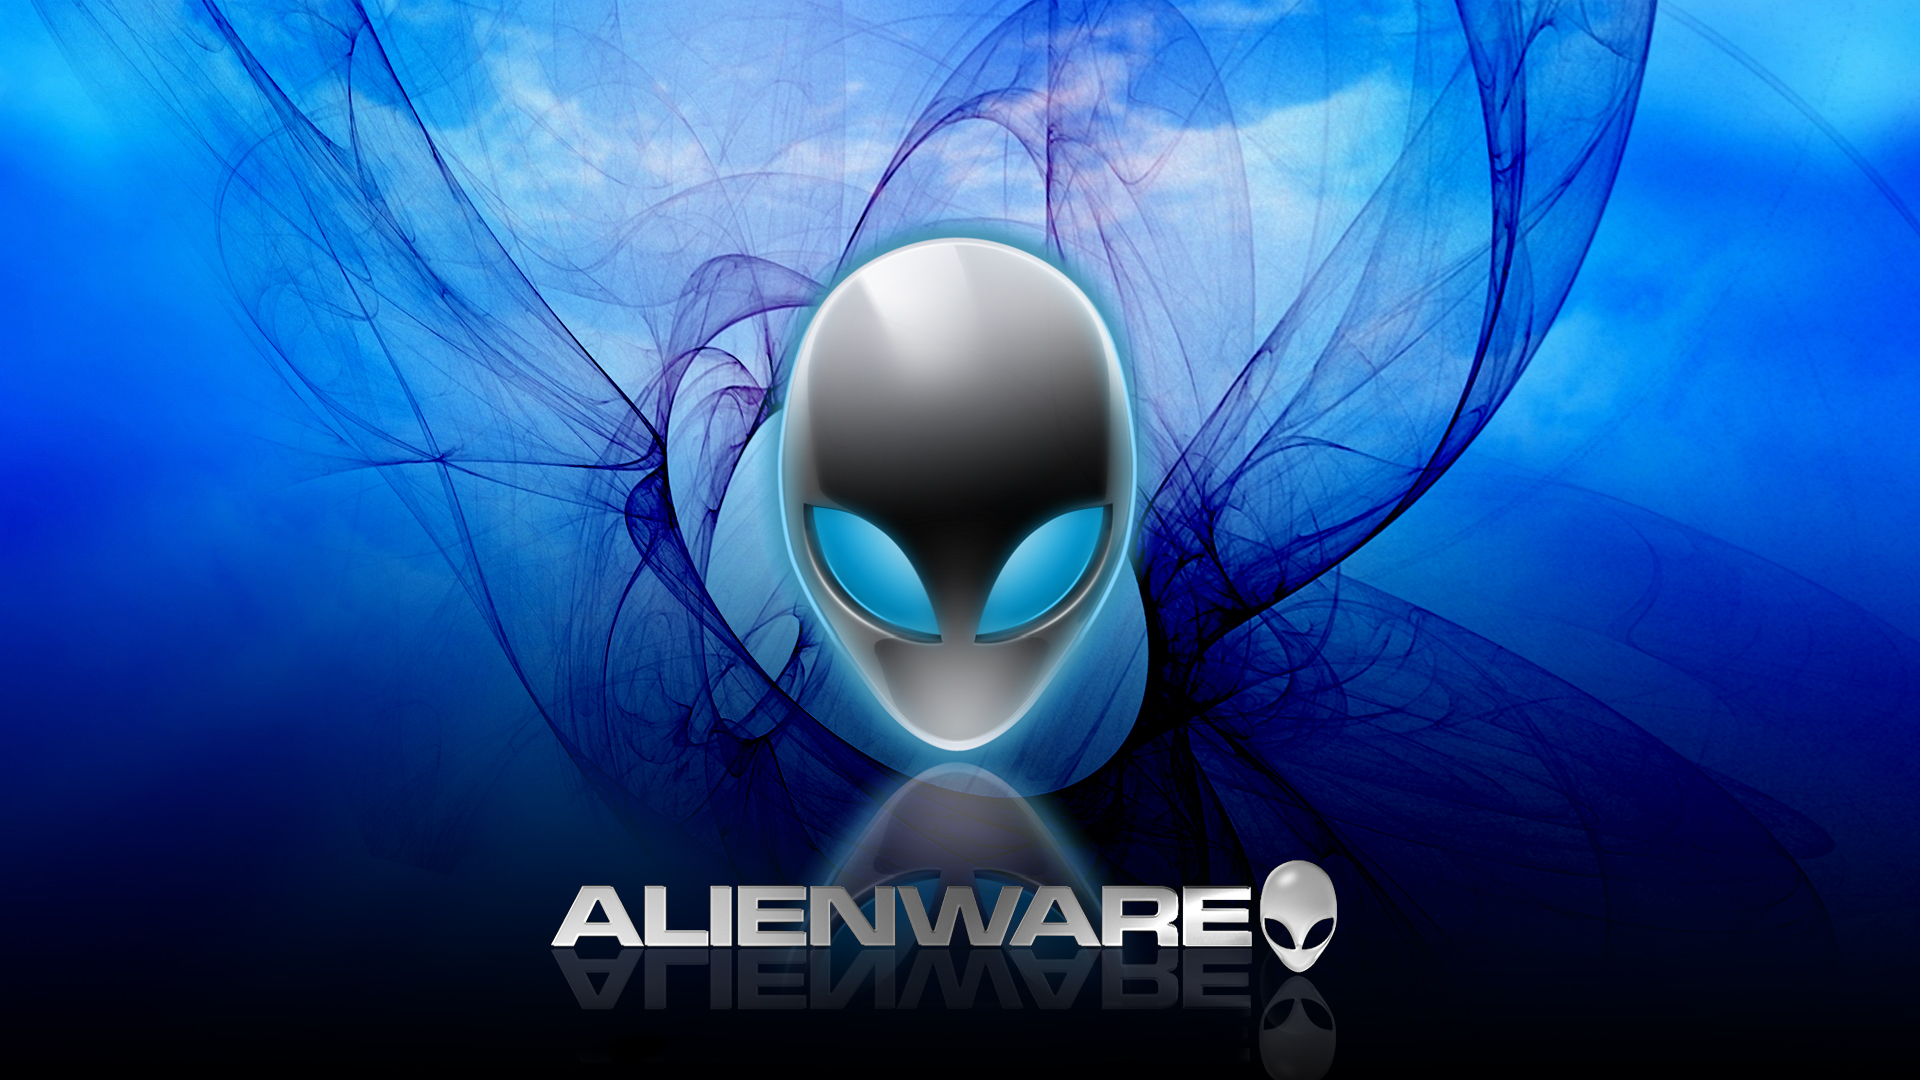 Wallpaper Of Alienware